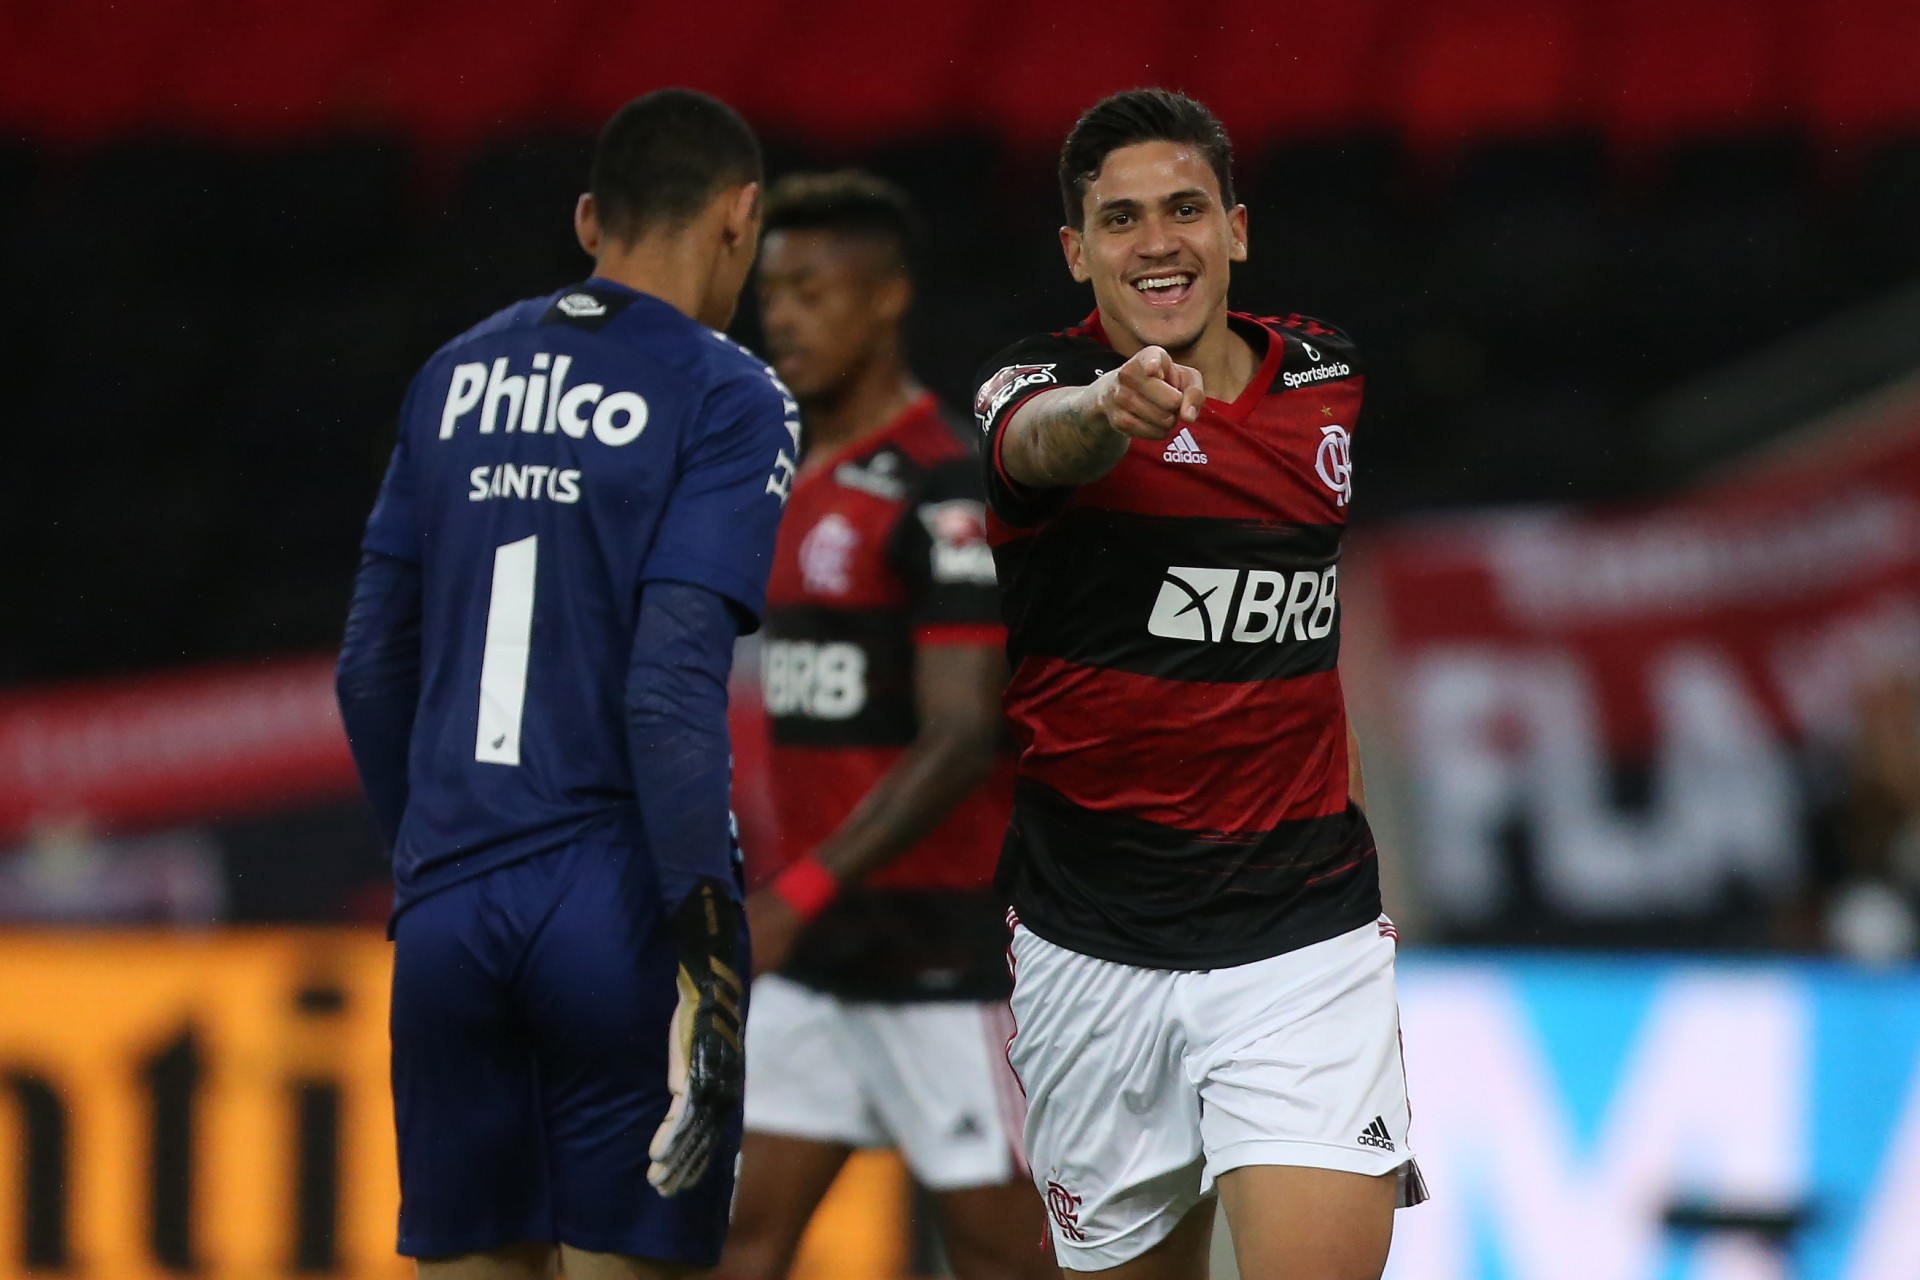 Flamengo x AthleticoPR jogo de volta pelas oitavas de final da Copa do Brasil no estádio do Maracanã. O atacante Pedro comemora o segundo gol dele no jogo. - Daniel Castelo Branco